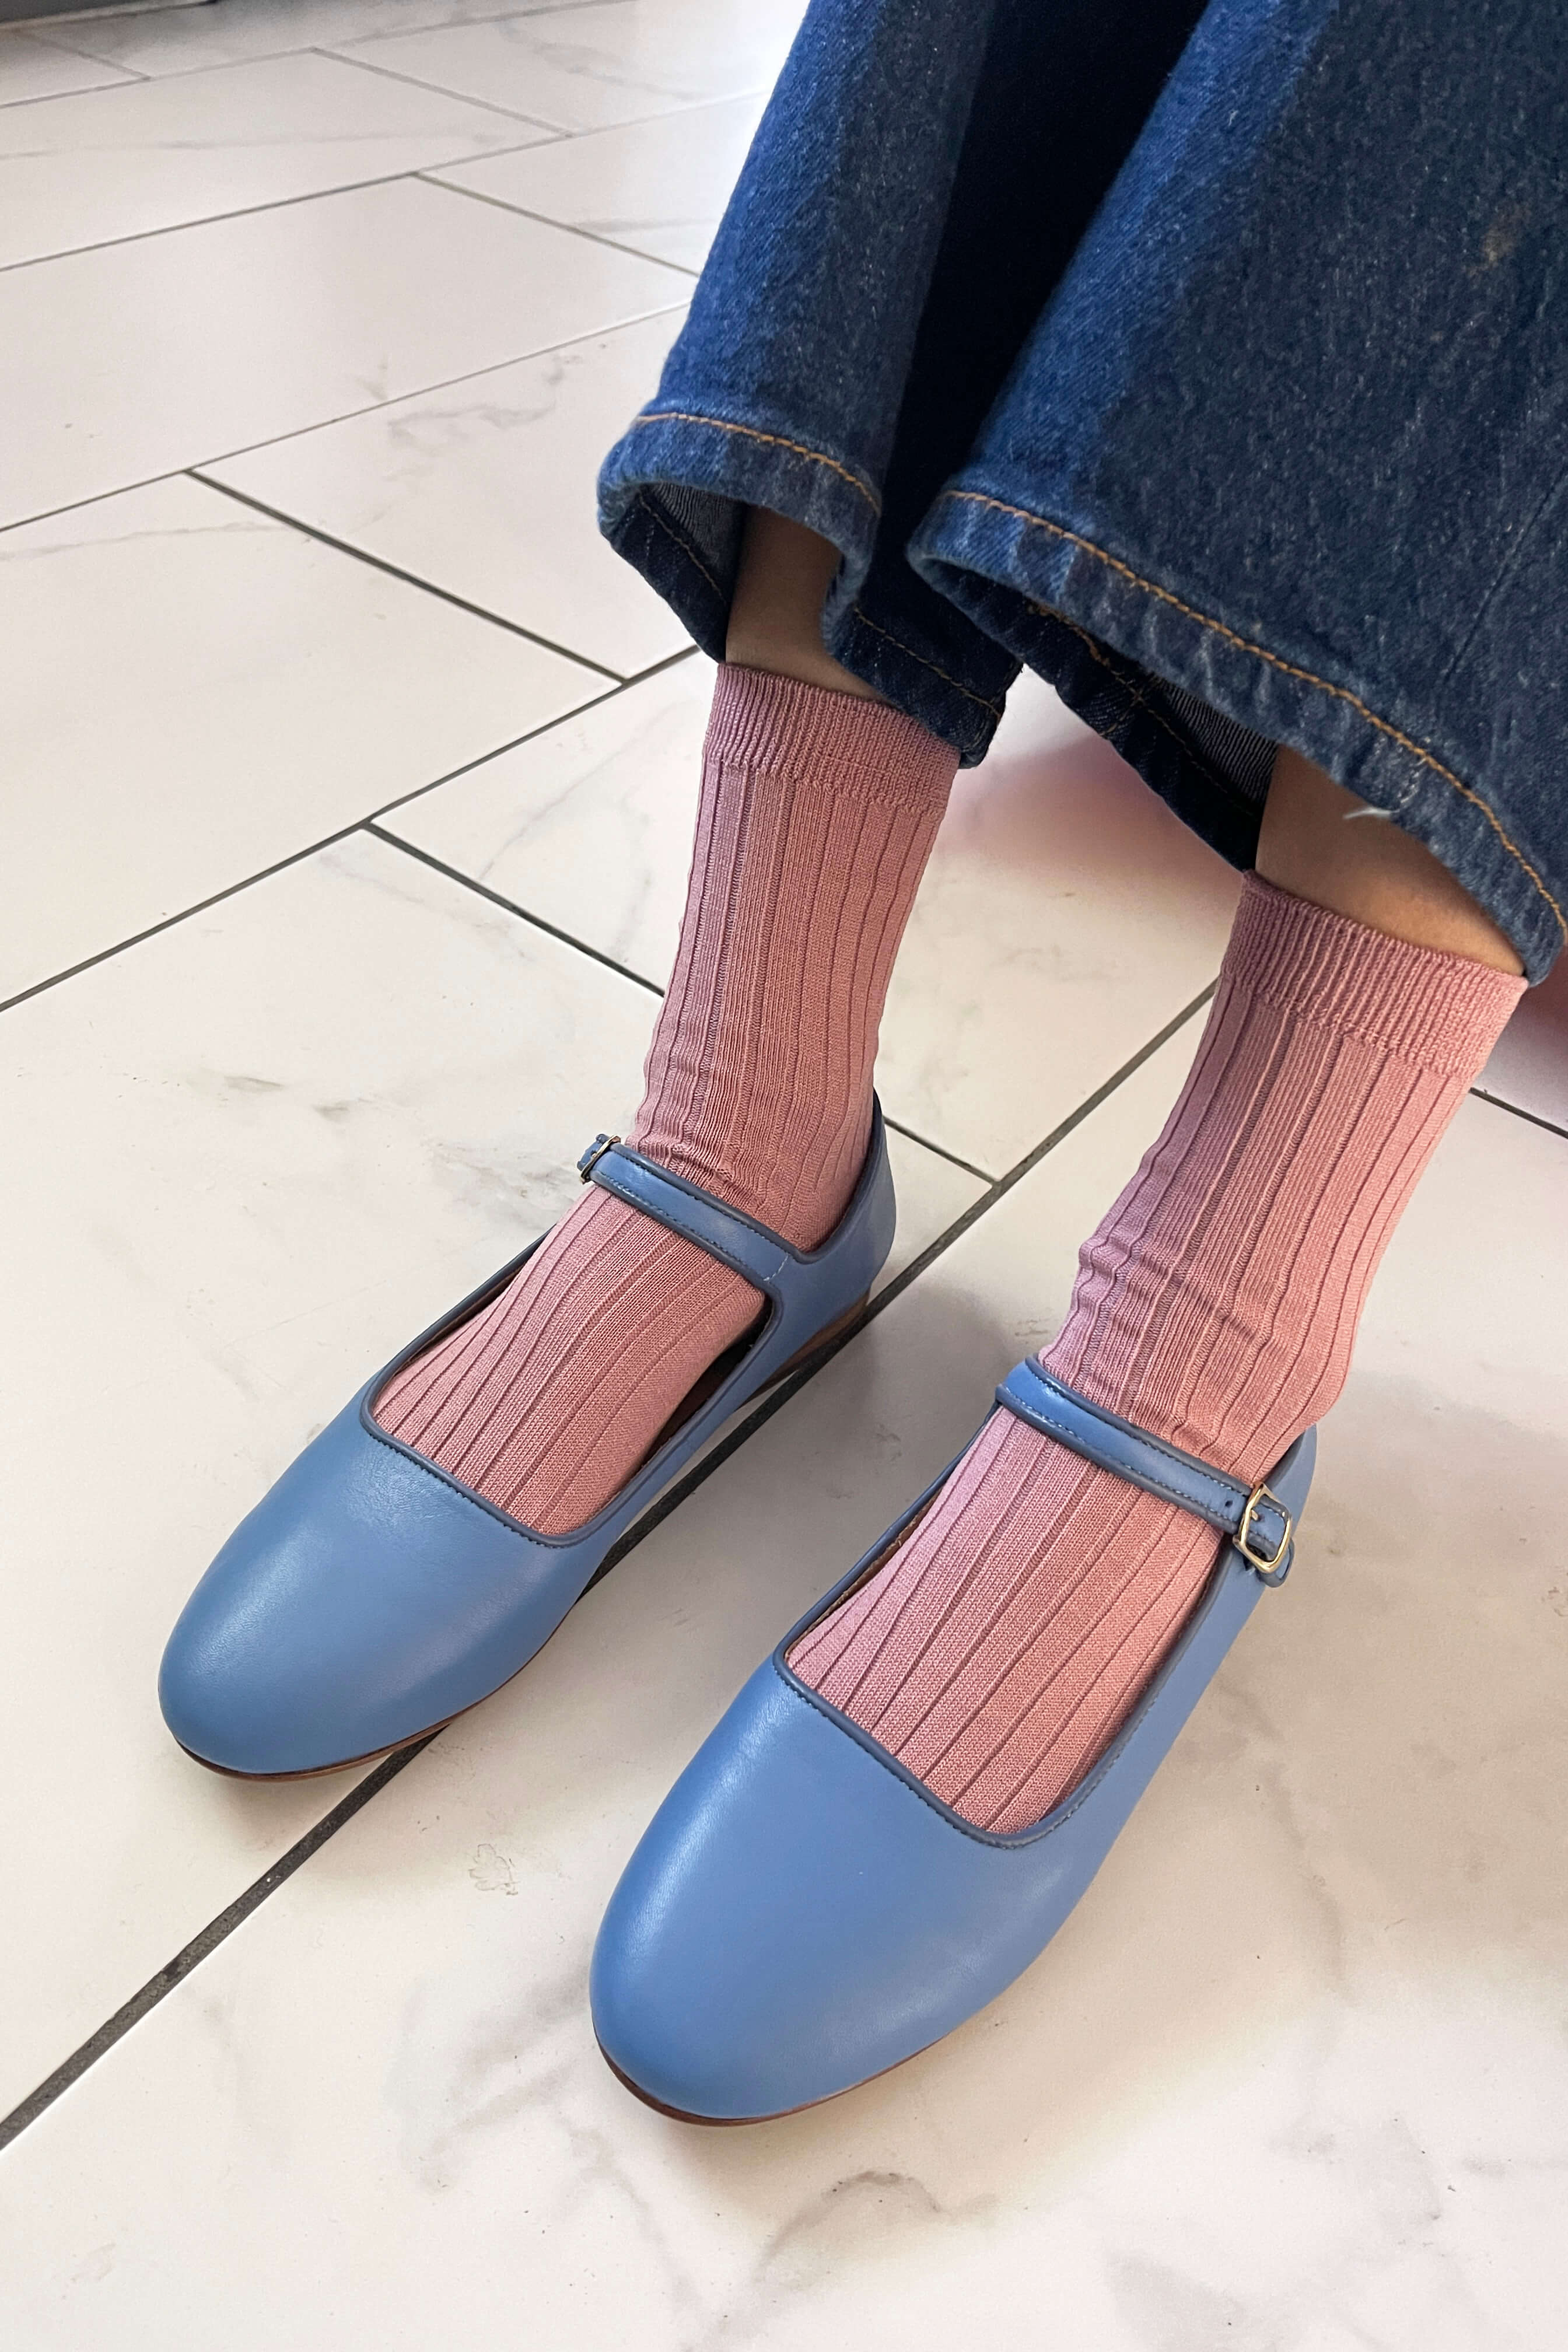 Her Socks | Desert Rose | by Le Bon Shoppe - Lifestory